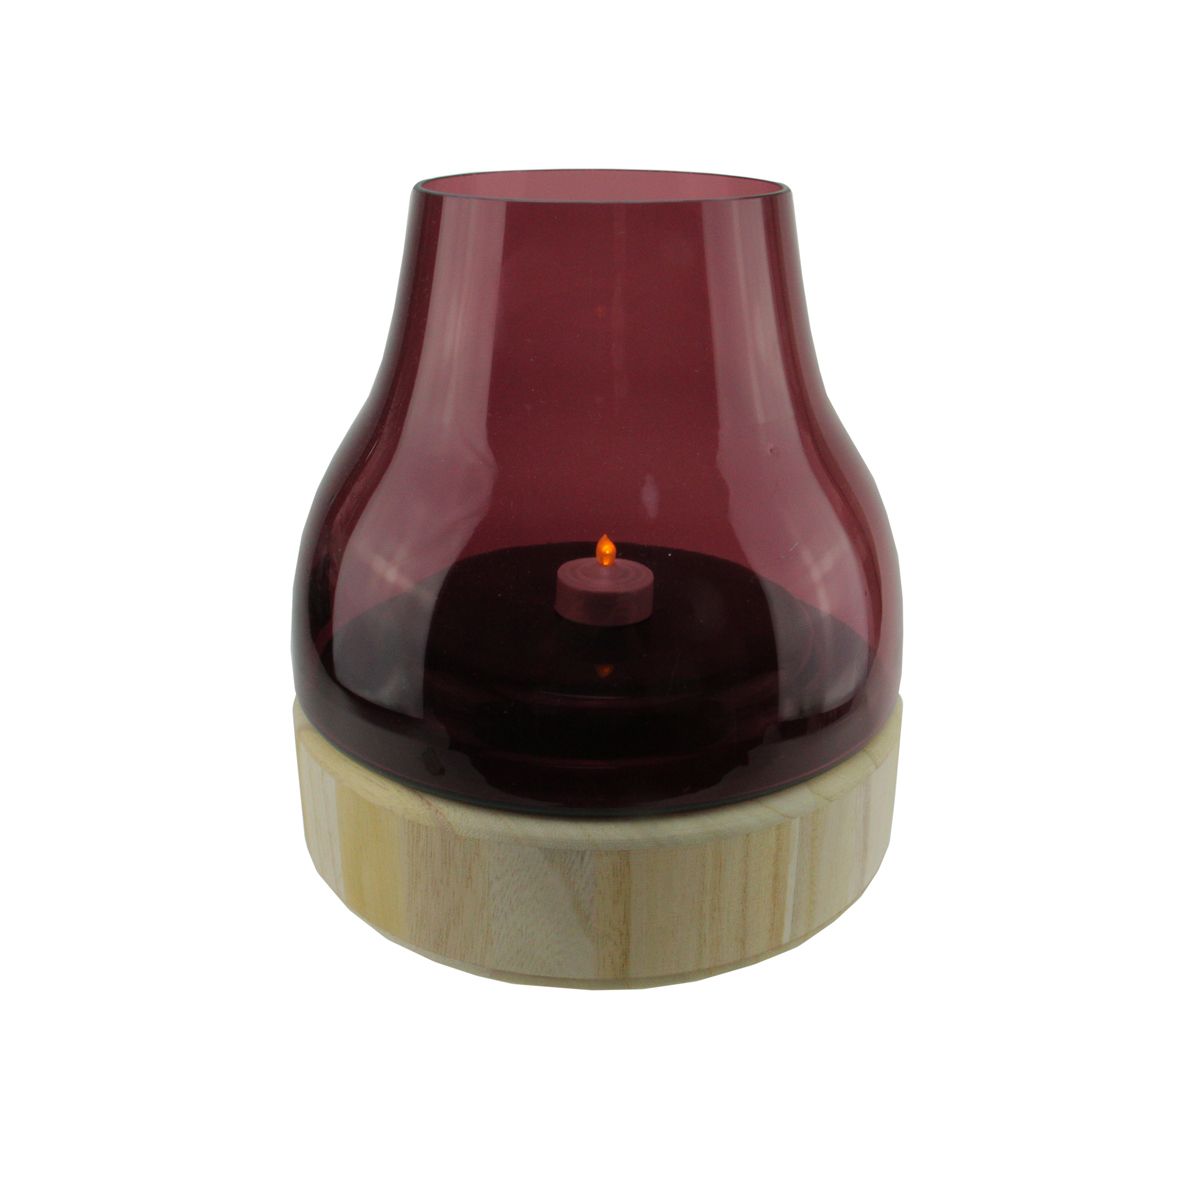 подсвечник деревянный под 1 свечу квадратный массив 6×6×3 см Подсвечник на столбе из цветного стекла Мерло высотой 9,75 дюйма с деревянным основанием